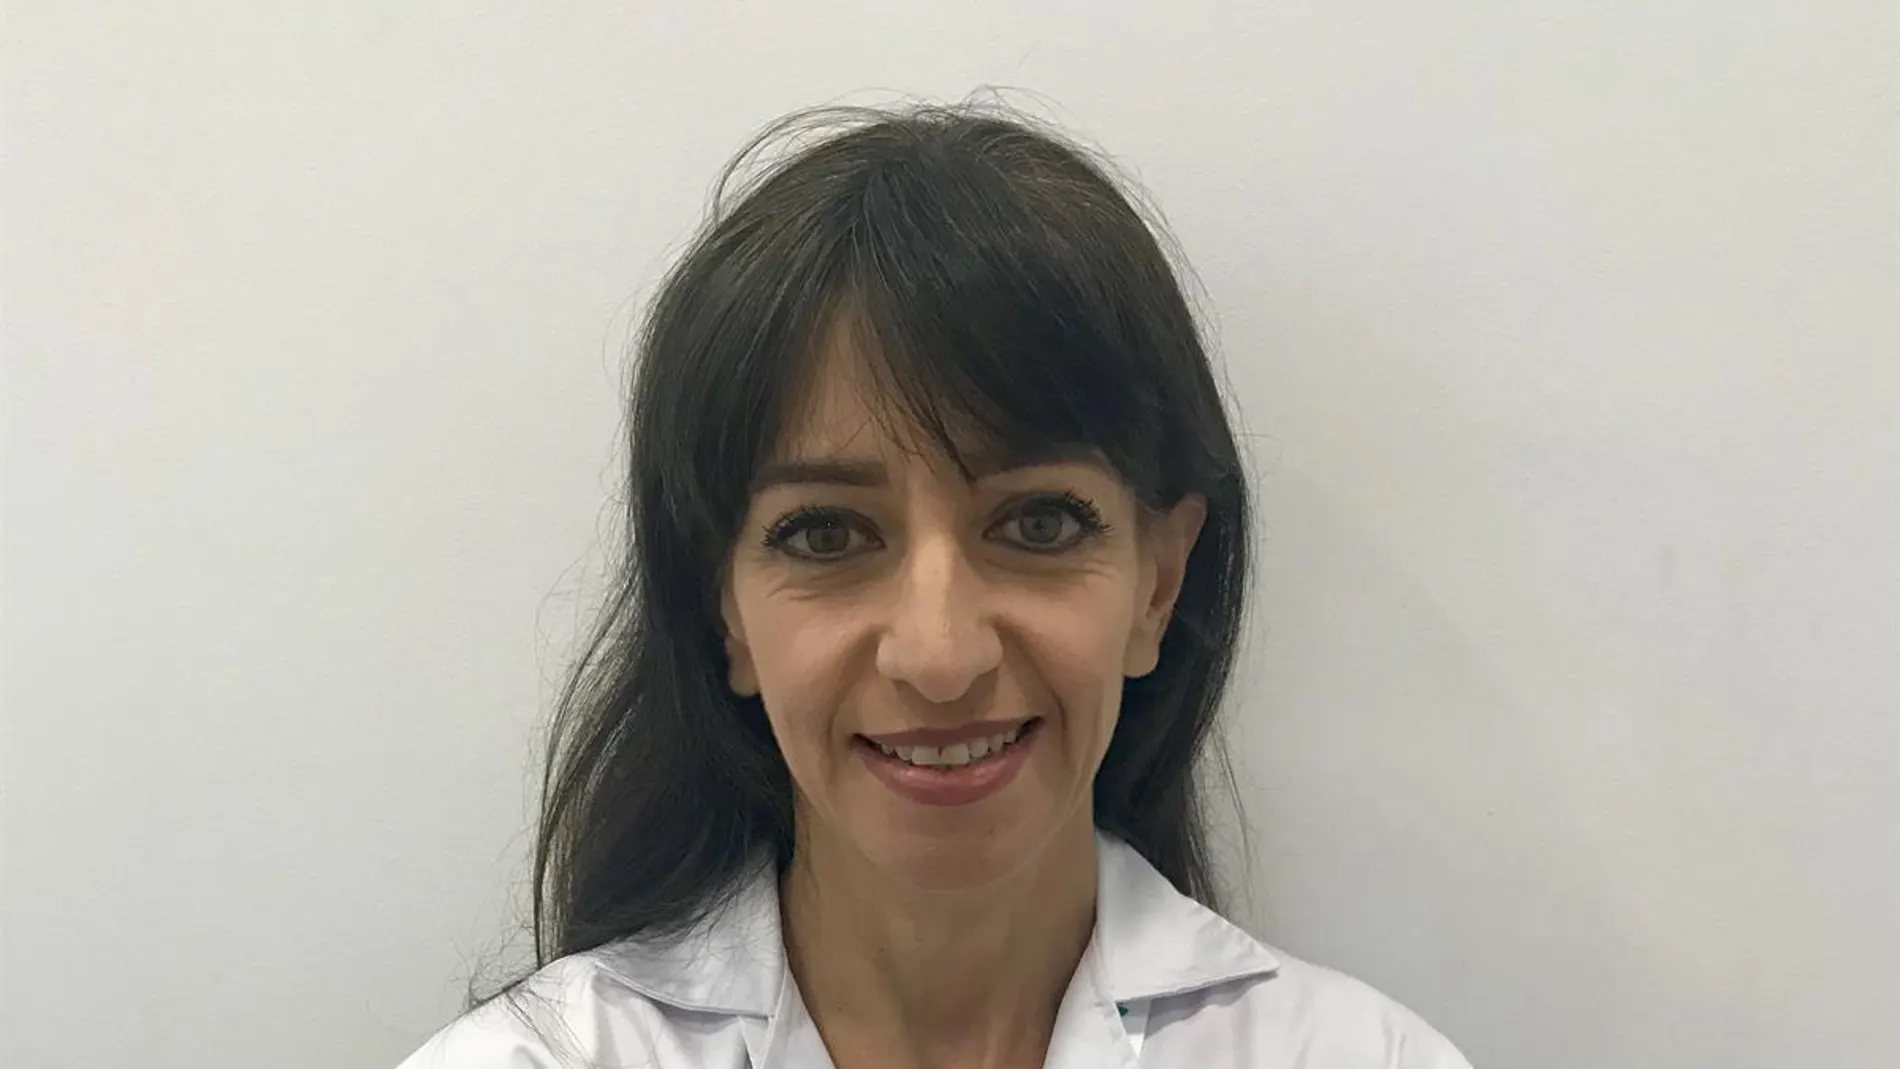 La doctora Mercedes Gómez Crespo, especialista del servicio de psicología del Hospital Quirónsalud Infanta Luisa de Sevilla / La Razón